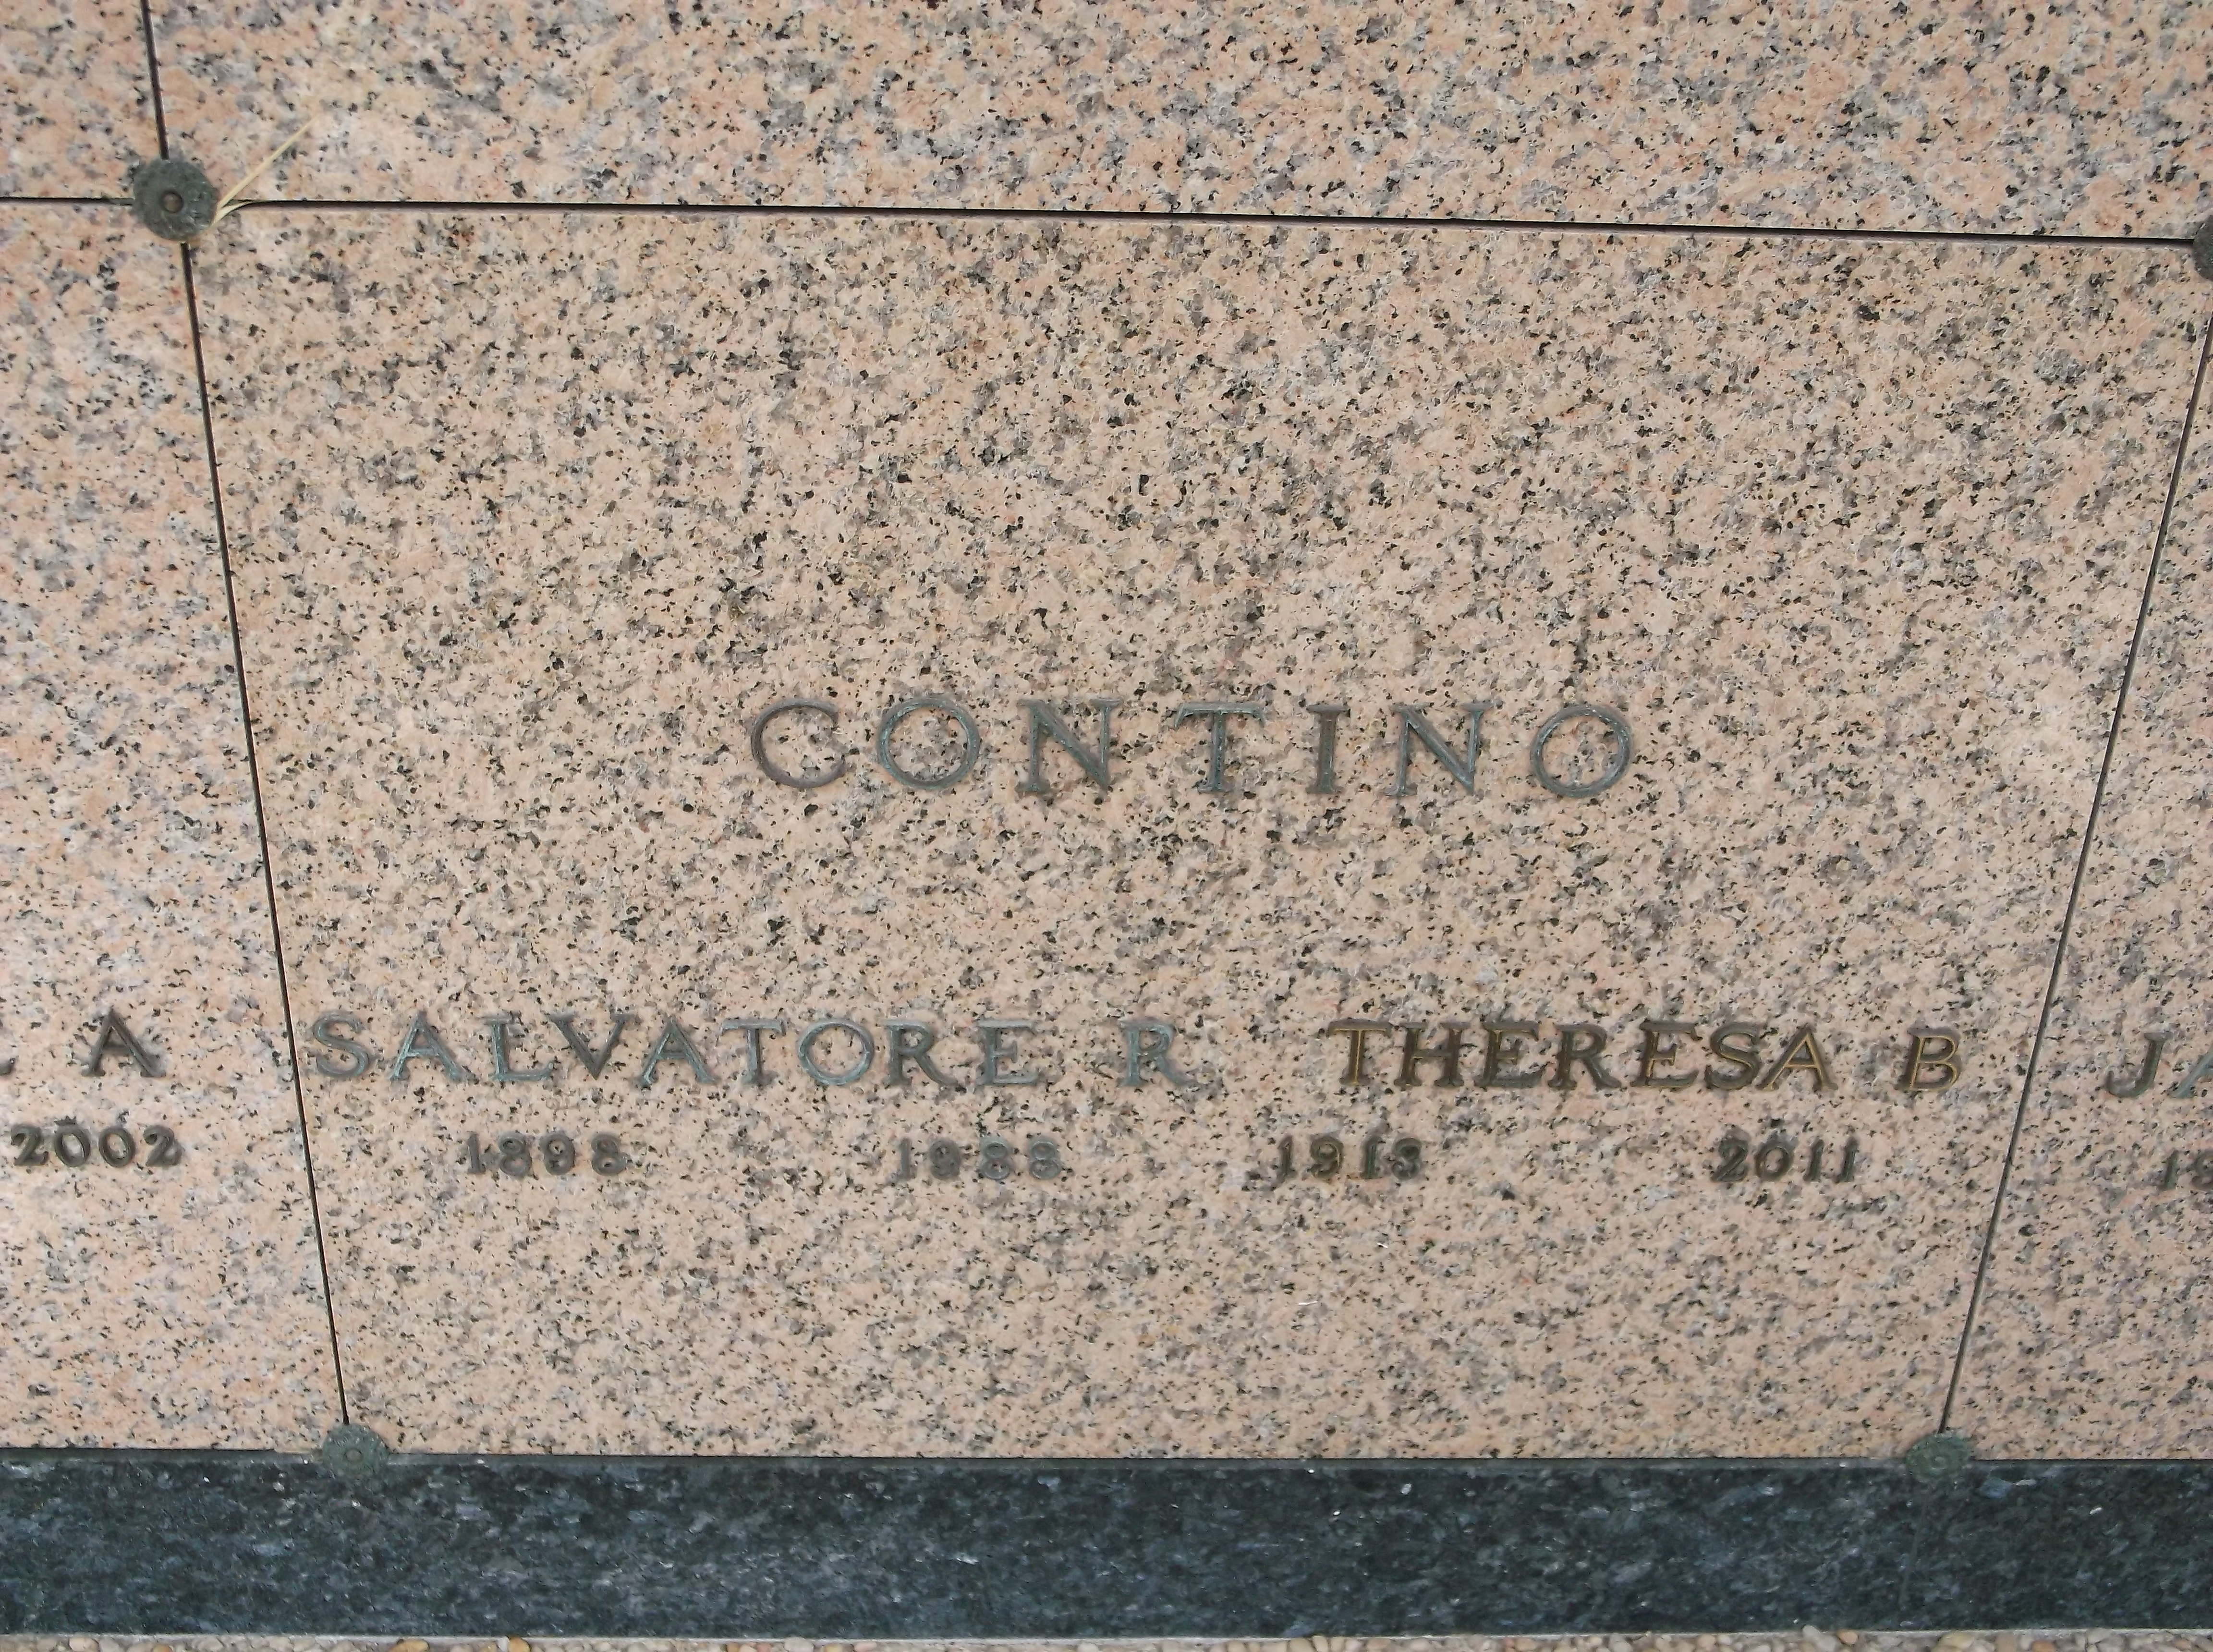 Salvatore R Contino